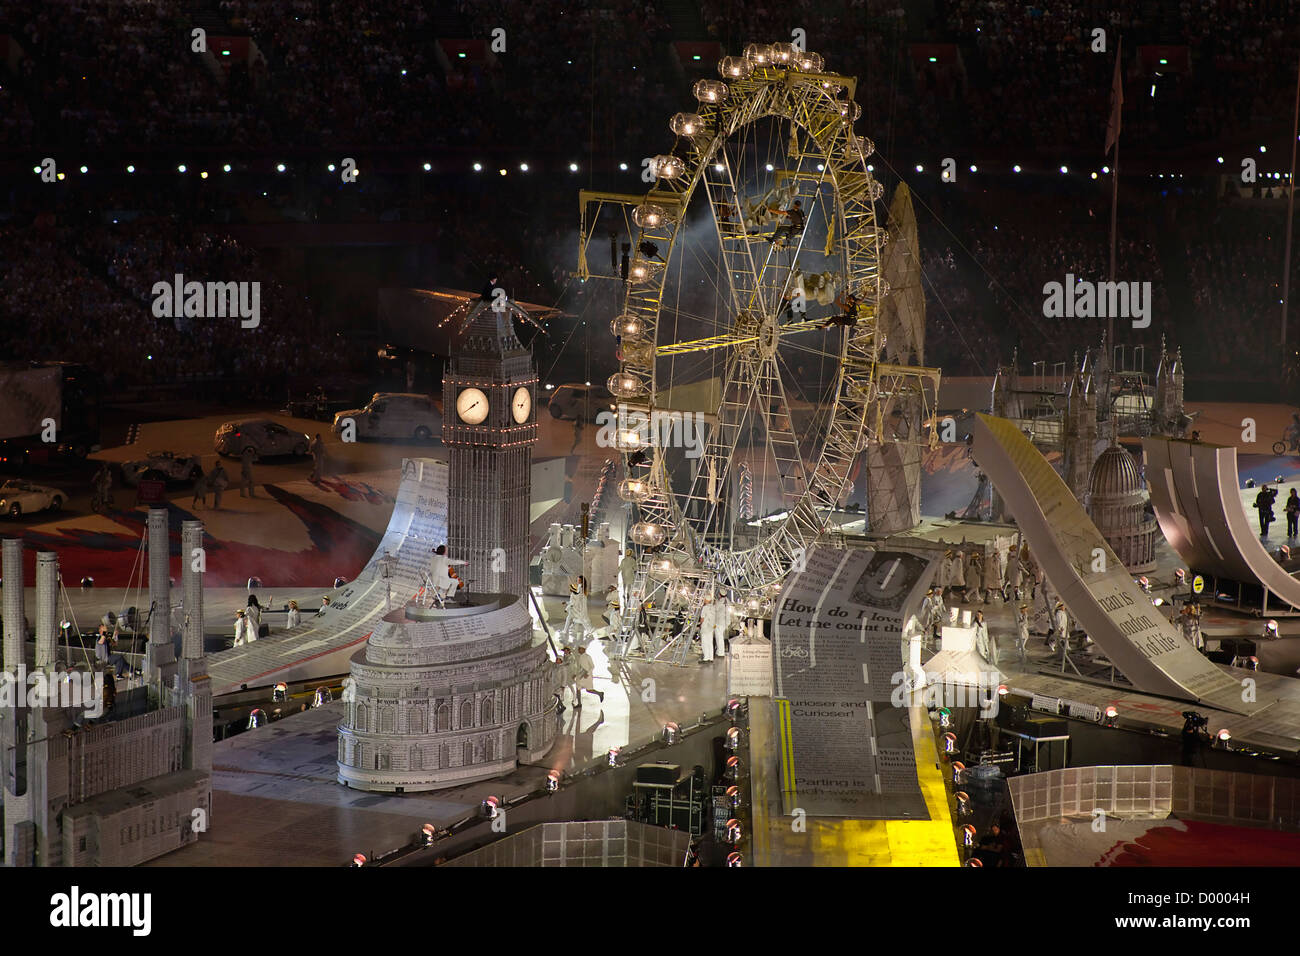 Inghilterra, Londra, Stratford, giochi olimpici cerimonia di chiusura la visualizzazione in stadium. Foto Stock